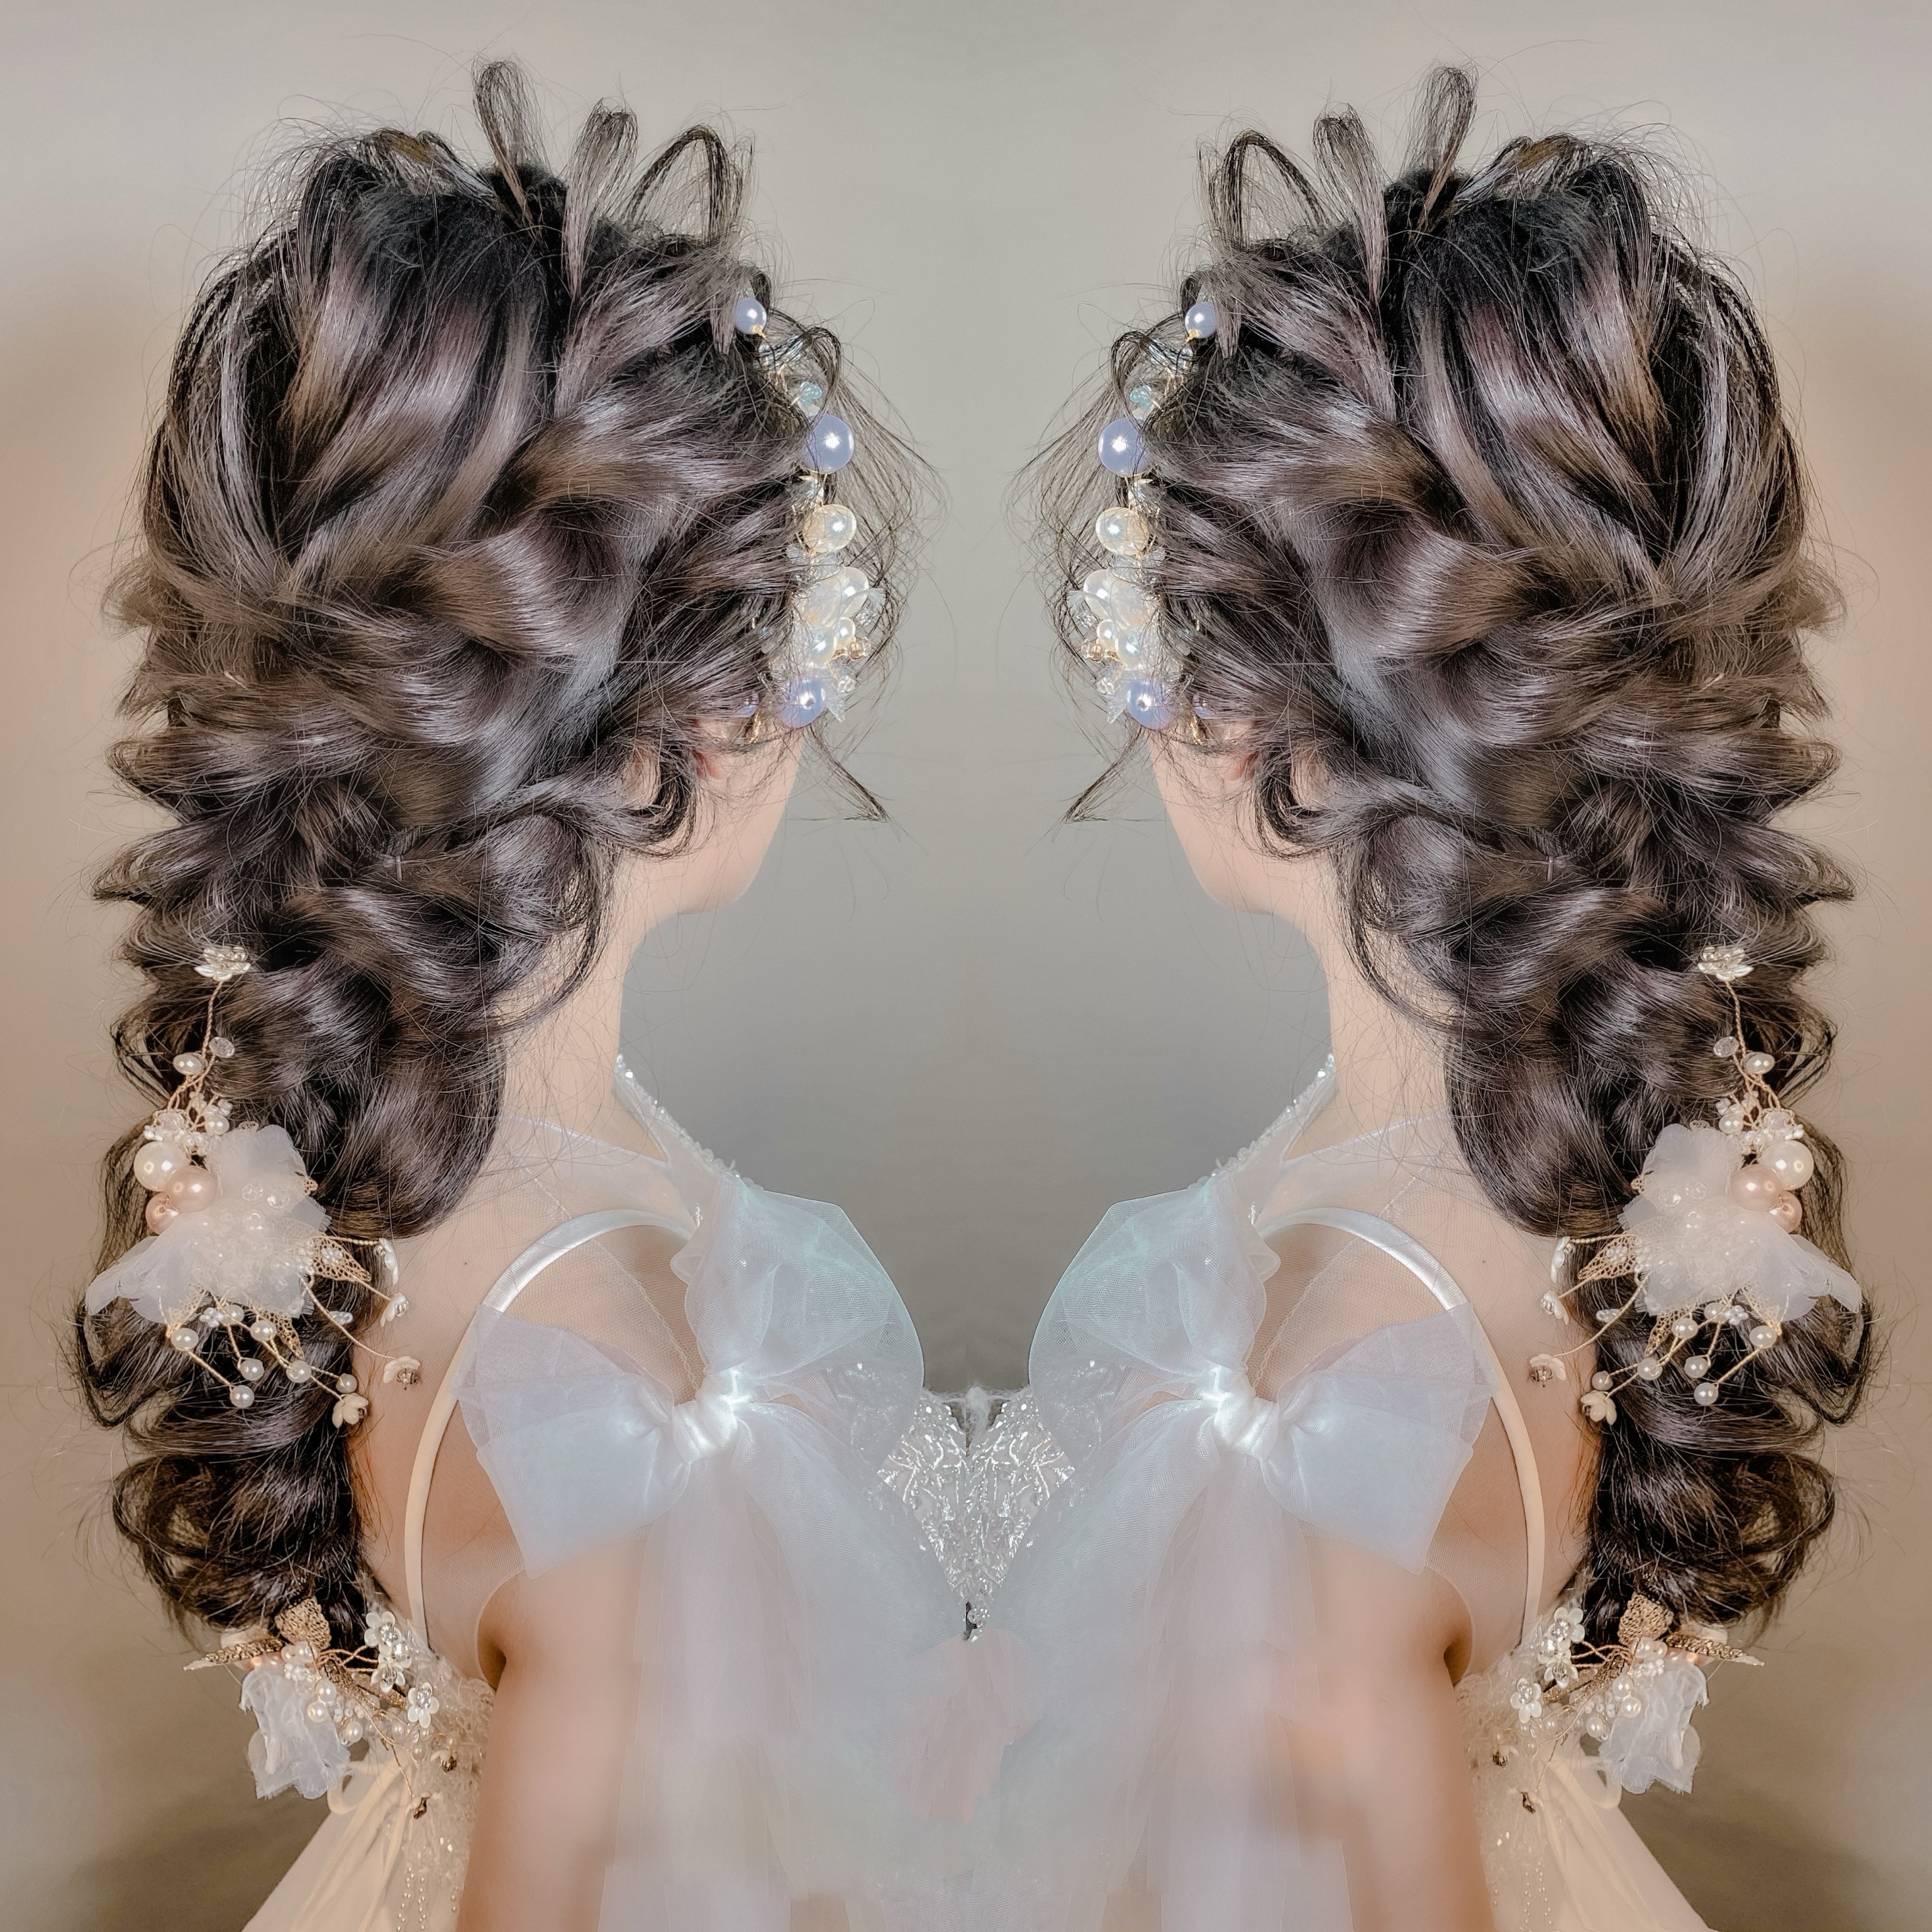 Kiểu tóc cô dâu lung linh là lựa chọn tuyệt vời để trở thành một nàng công chúa trong ngày cưới. Kiểu tóc này sẽ giúp bạn trông quý phái và thu hút mọi ánh nhìn. Hãy xem hình ảnh liên quan để thấy sự lung linh của kiểu tóc cô dâu này.